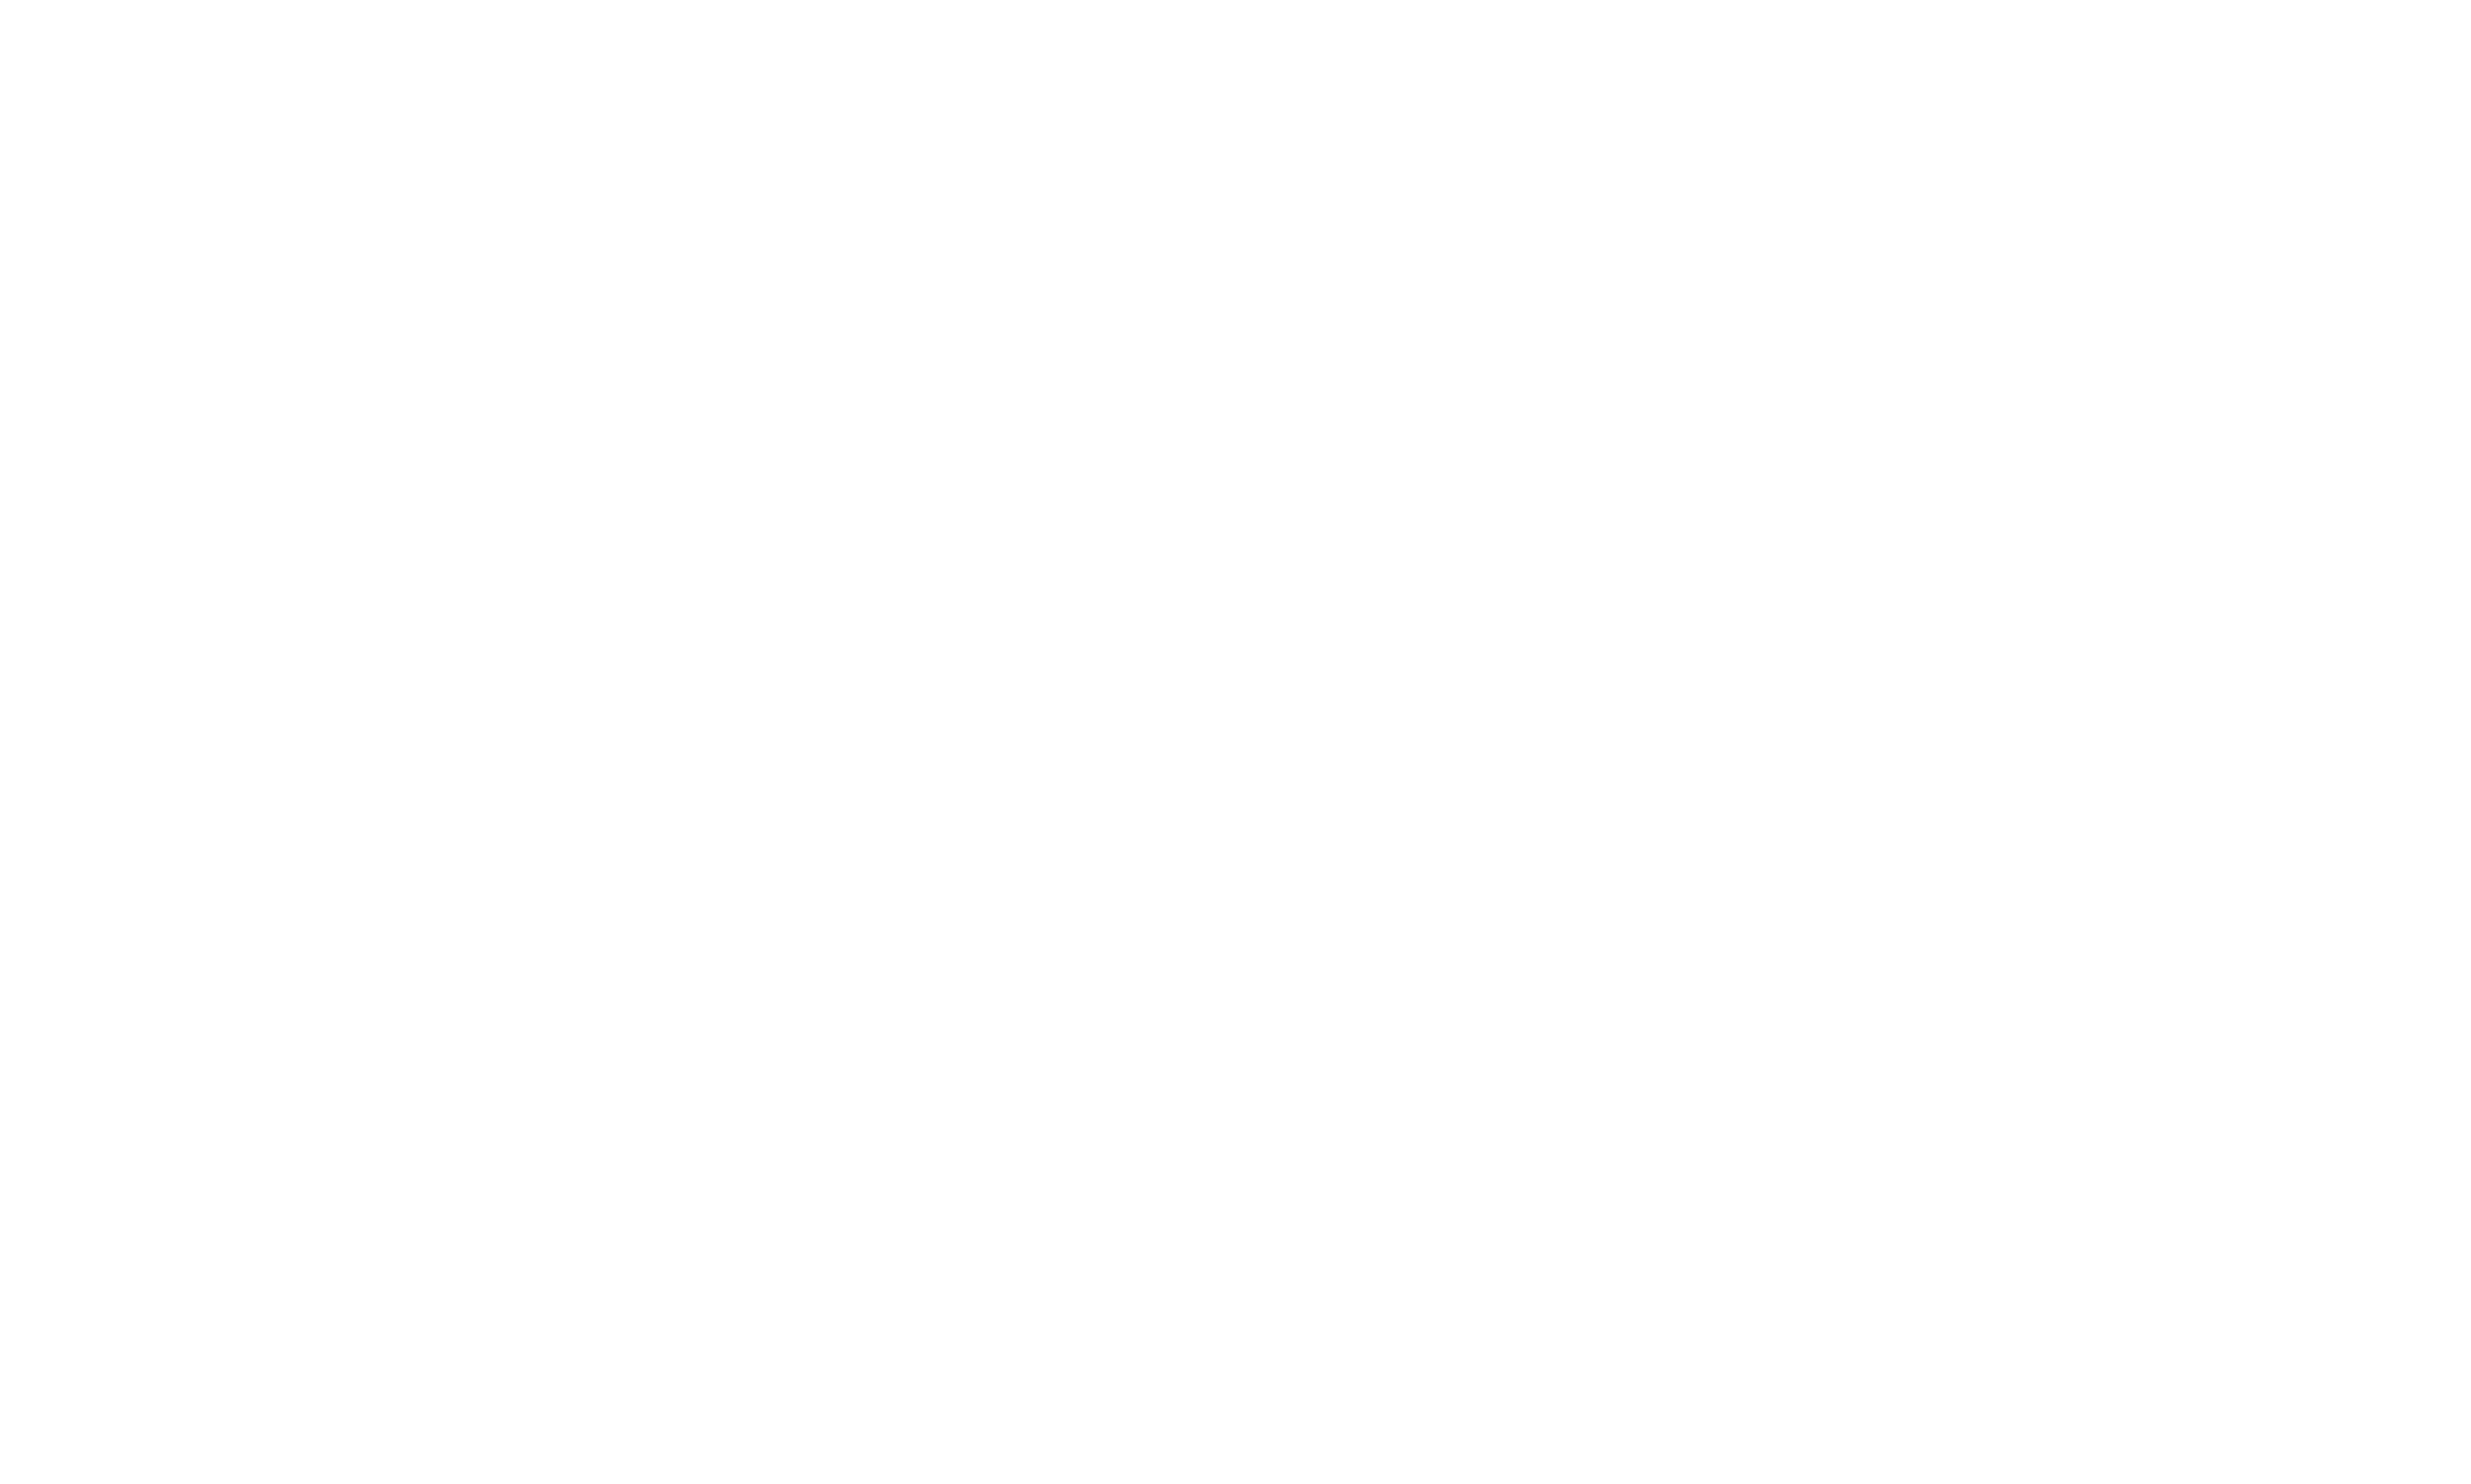 Plants Vs Zombies Logo Transparent Images